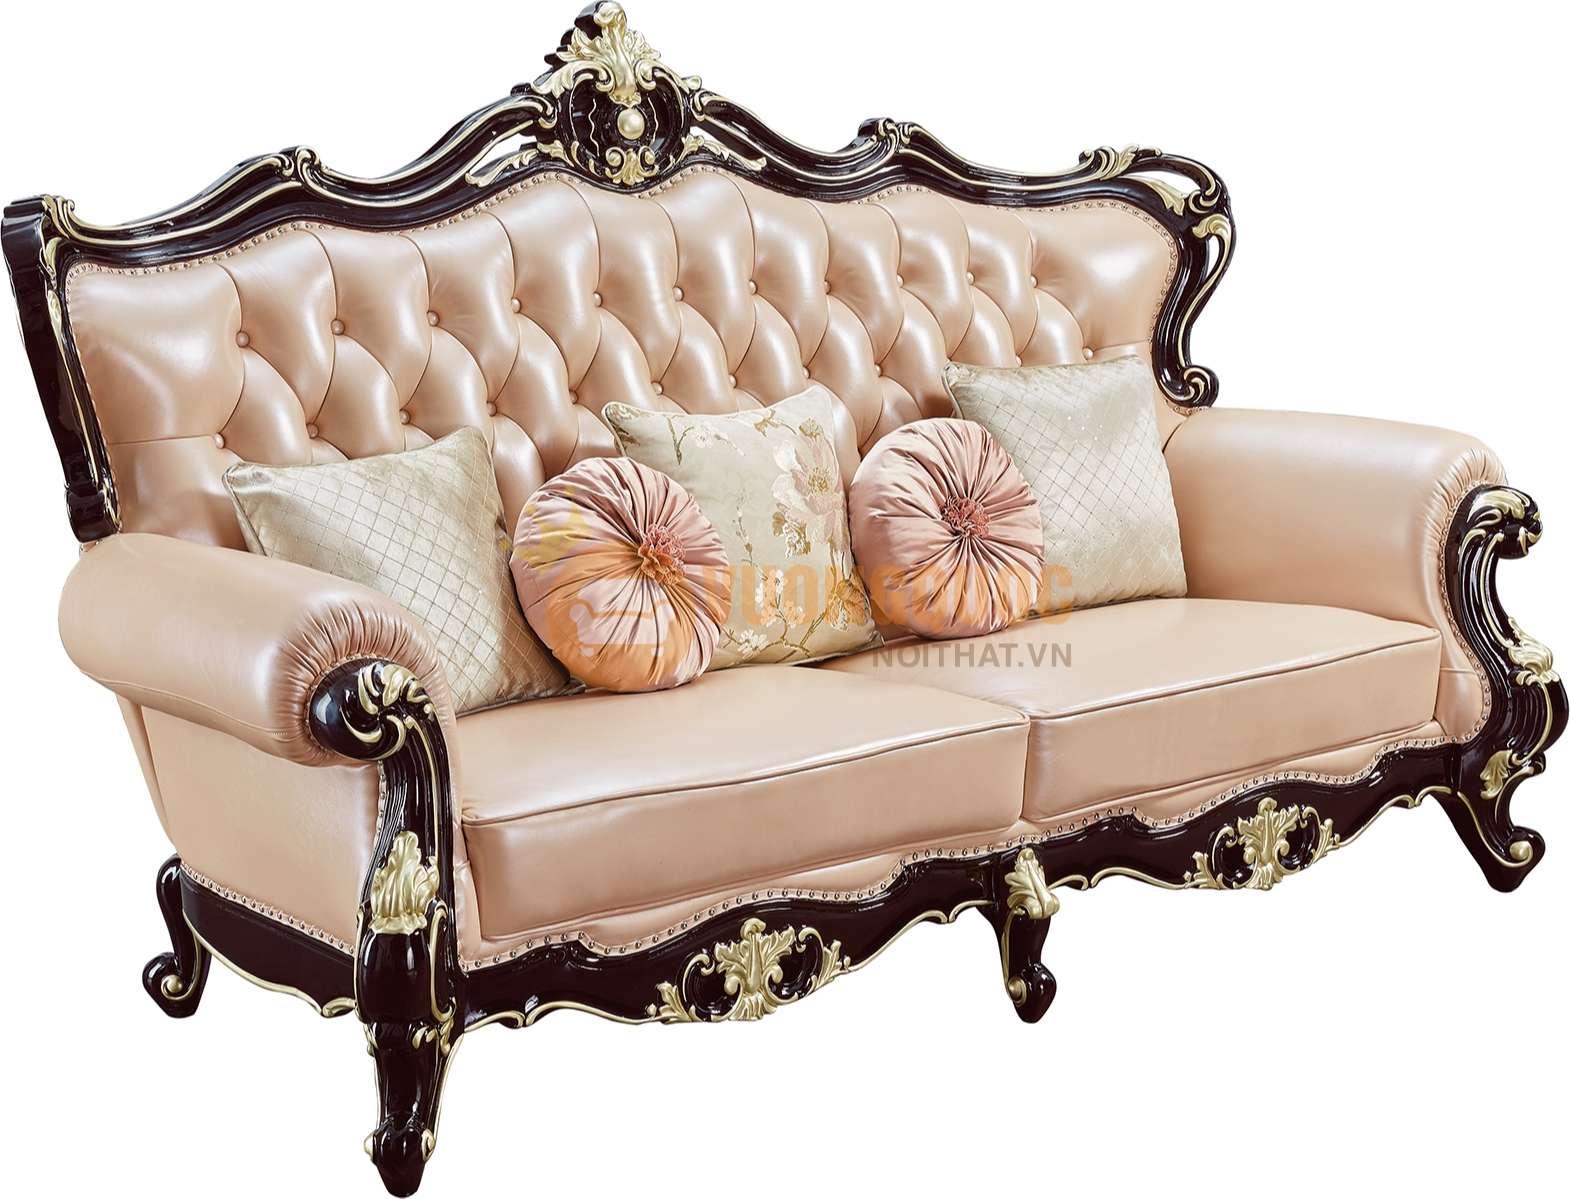 Bộ sofa phòng khách tân cổ điển cao cấp nhập khẩu JVN6911AS sofa đơn